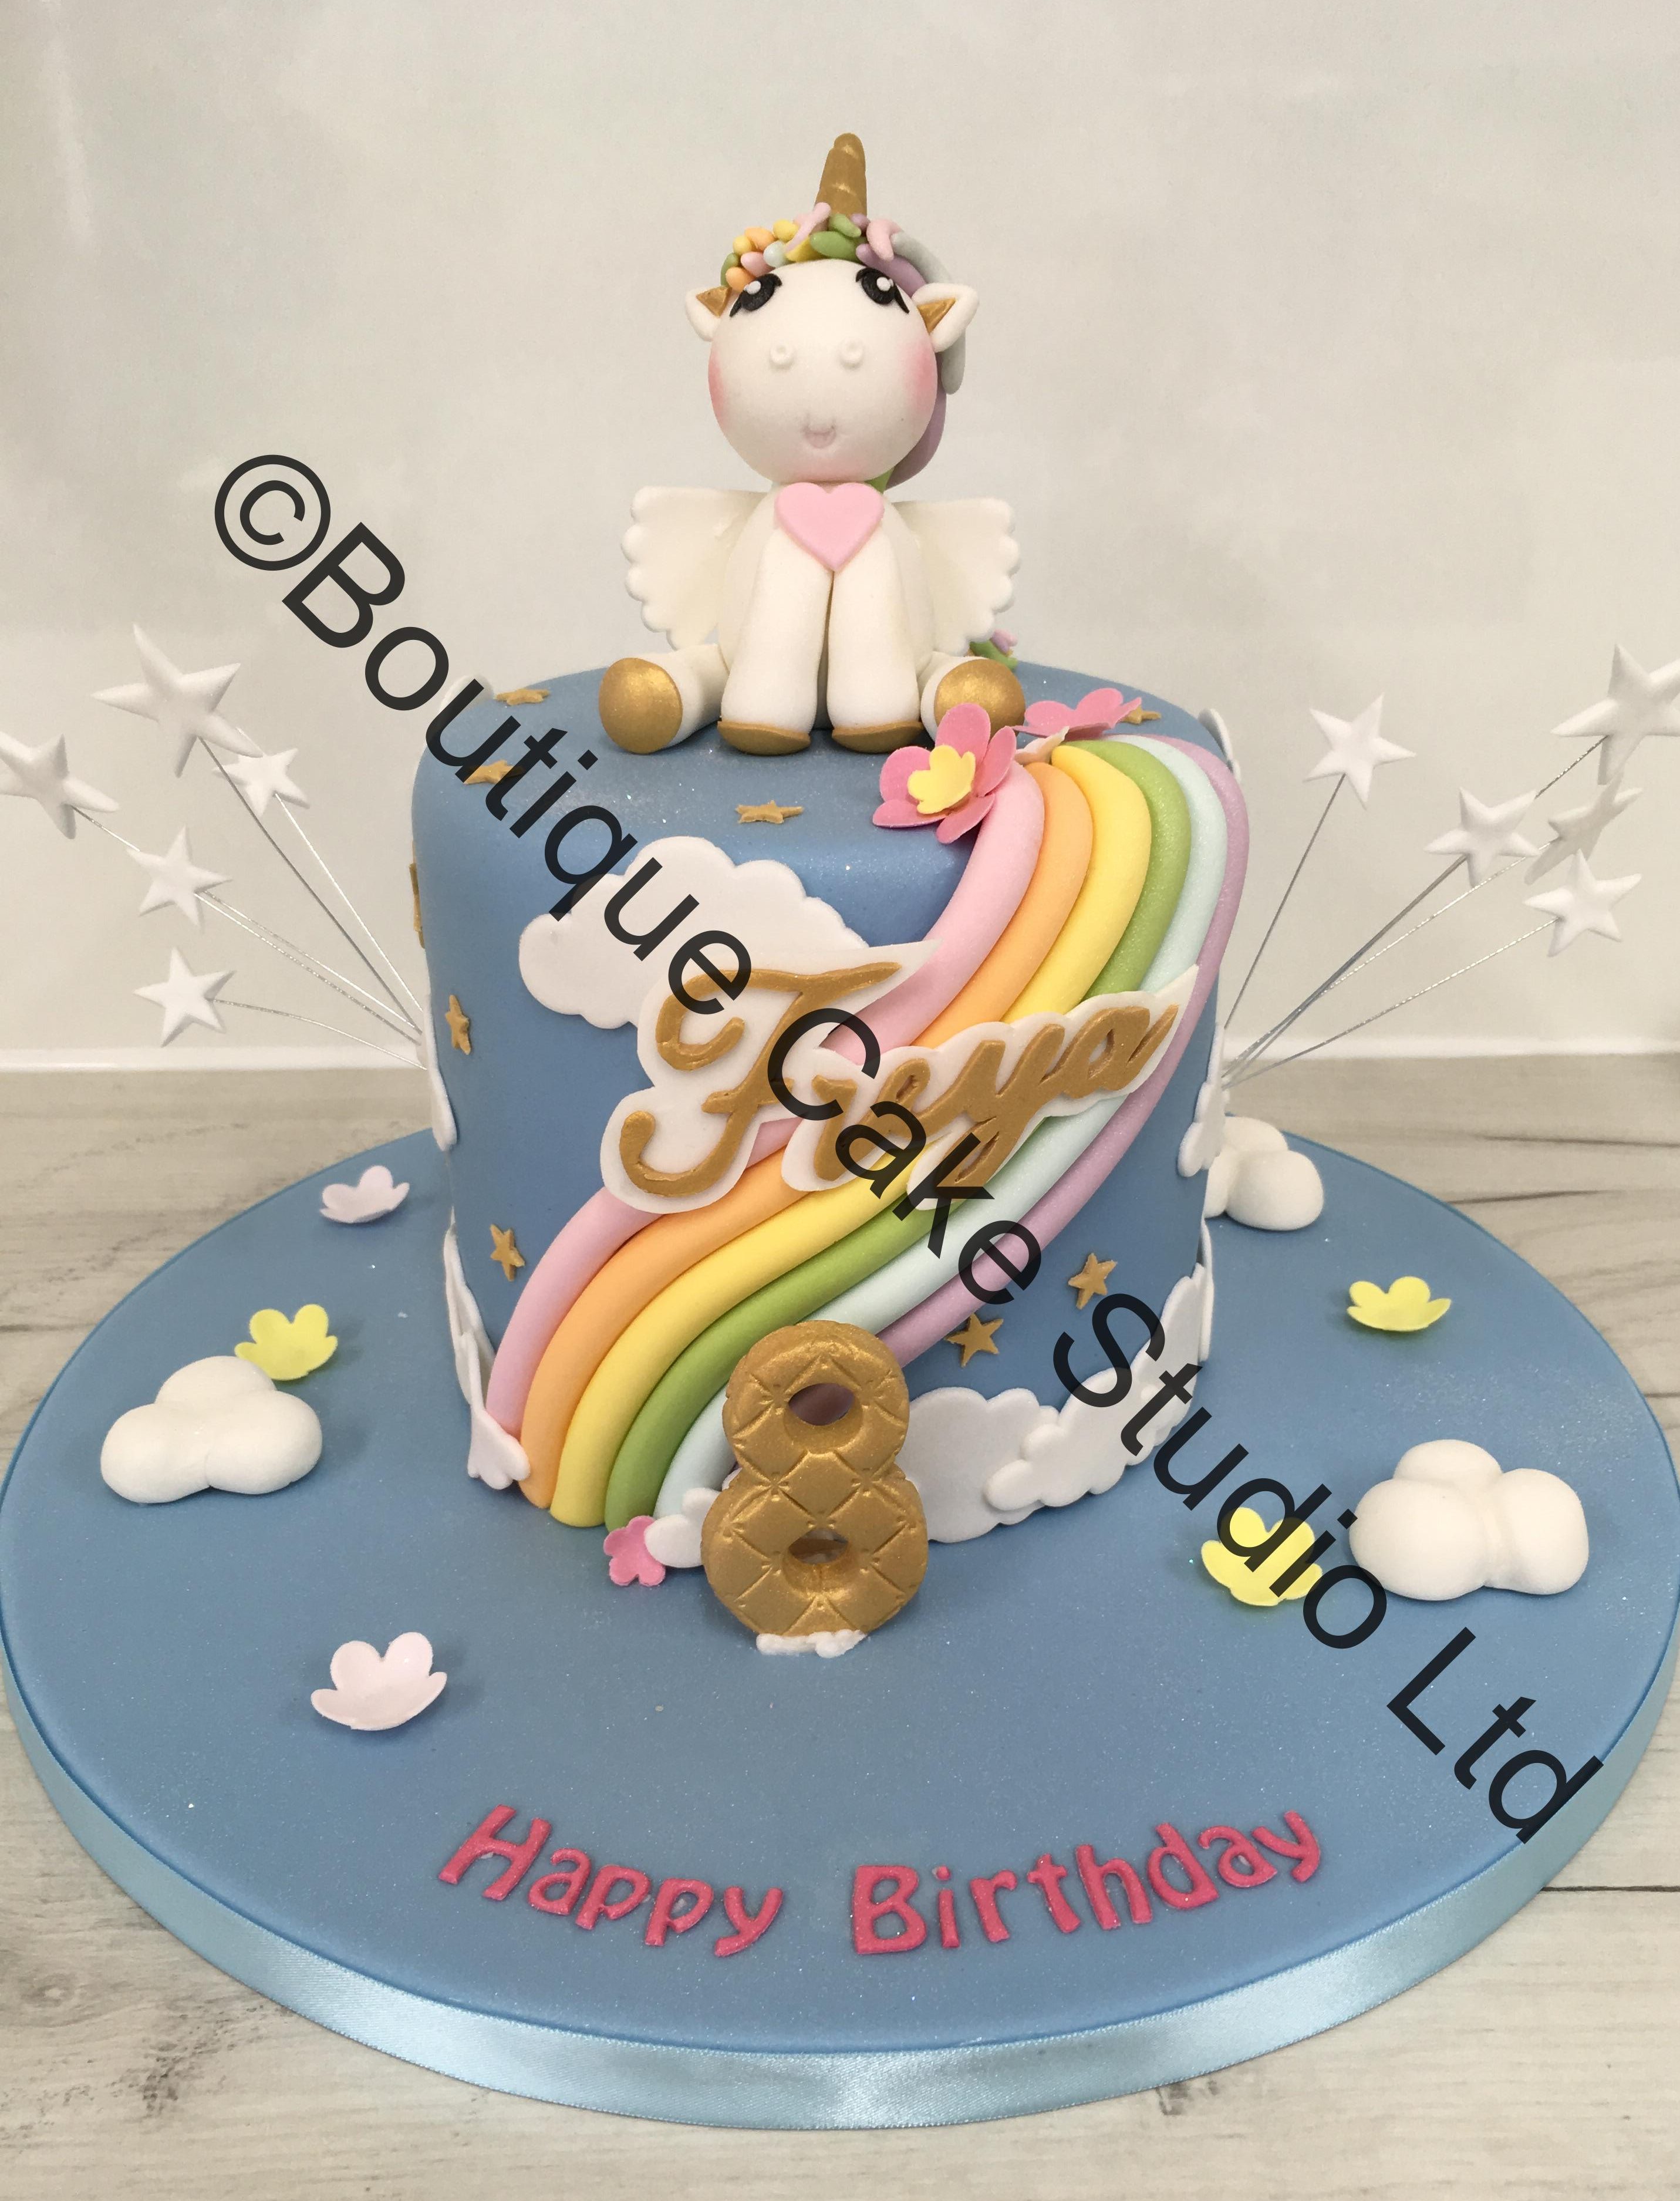 Pastel Rainbow Cake with Unicorn Model